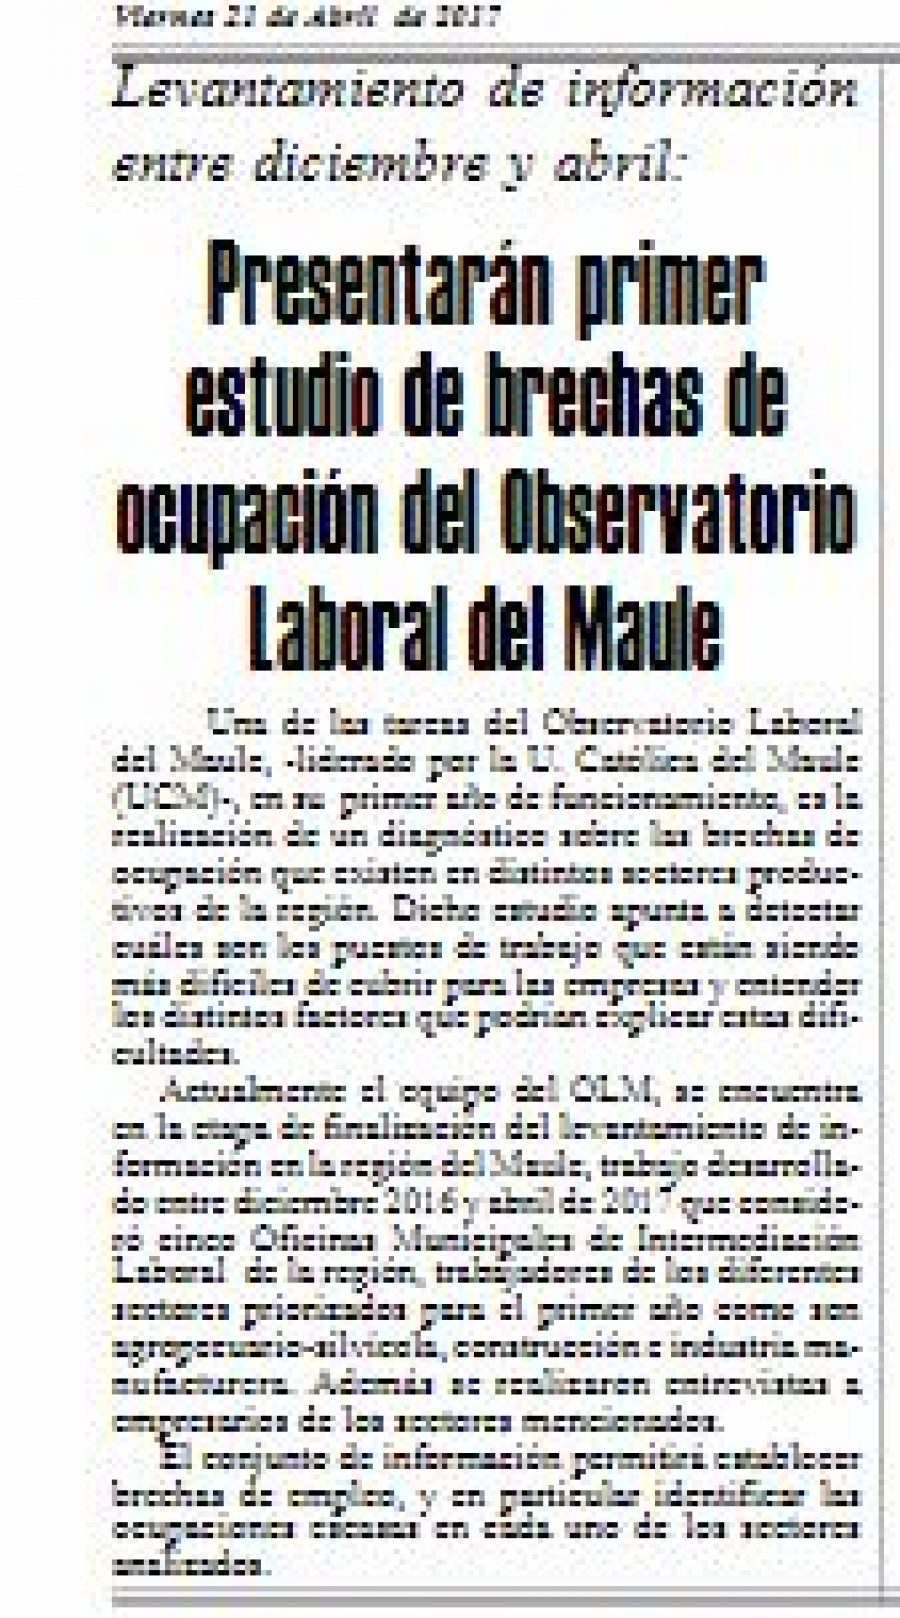 21 de abril en Diario El Heraldo: “Presentarán primer estudio de brechas de ocupación del Observatorio Laboral del Maule”